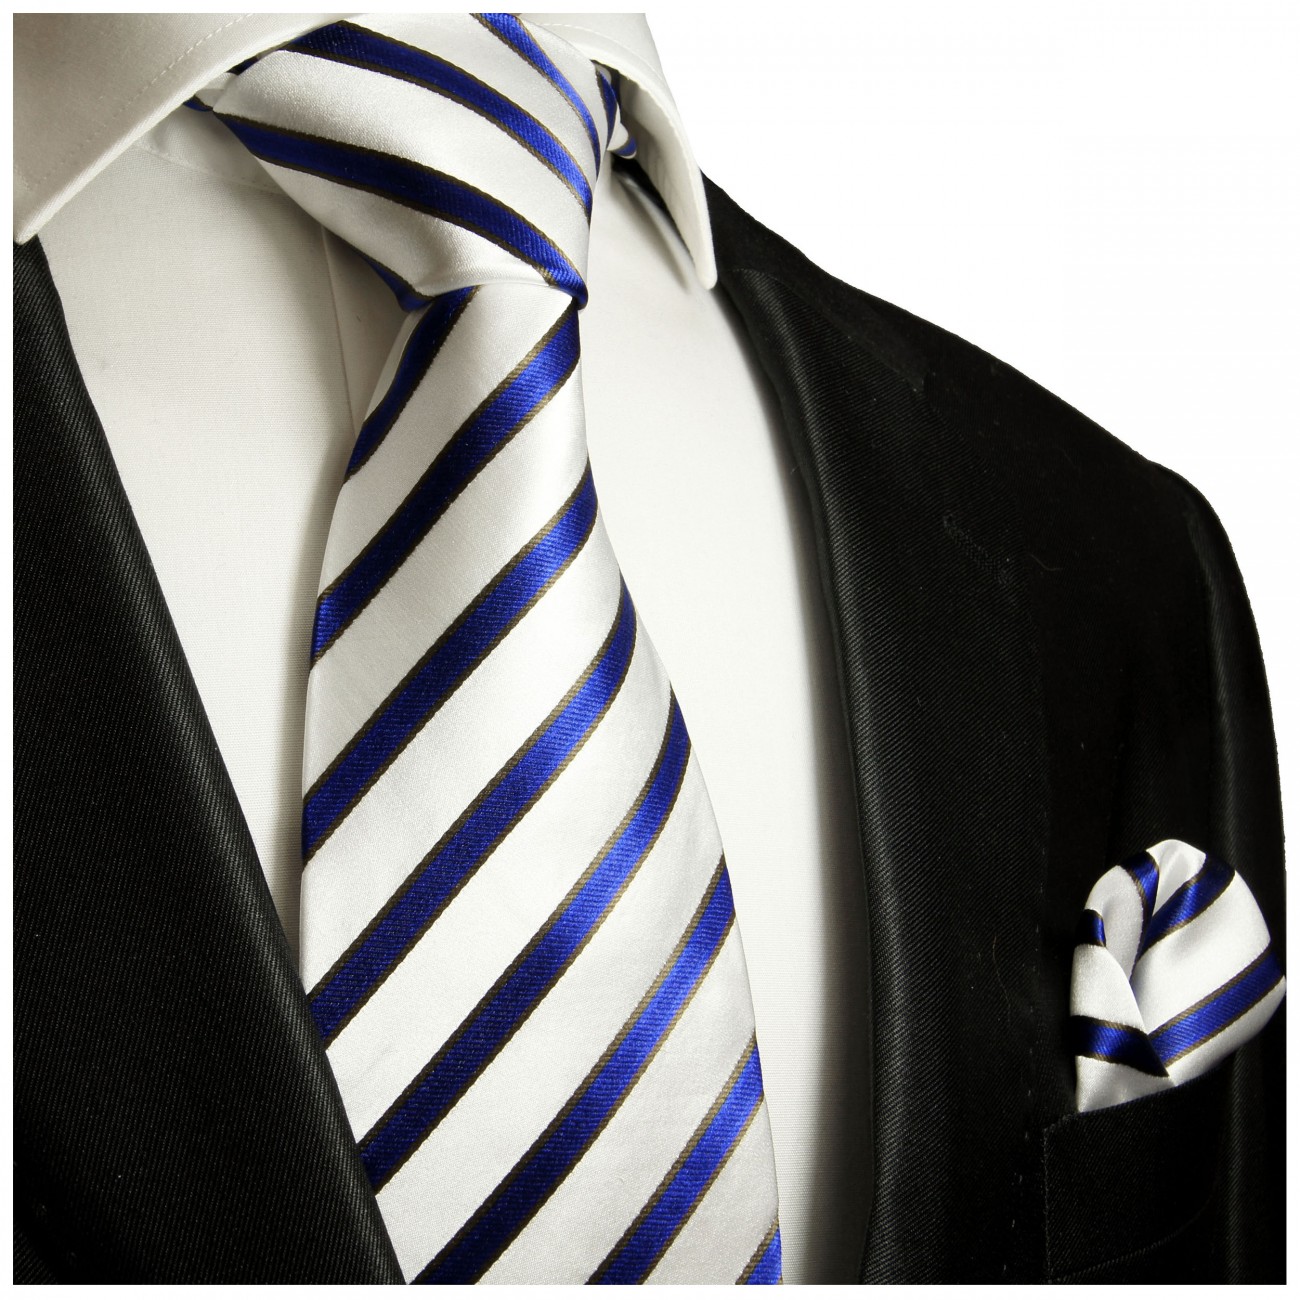 Krawatte blau weiss gestreift mit Einstecktuch Seide 985